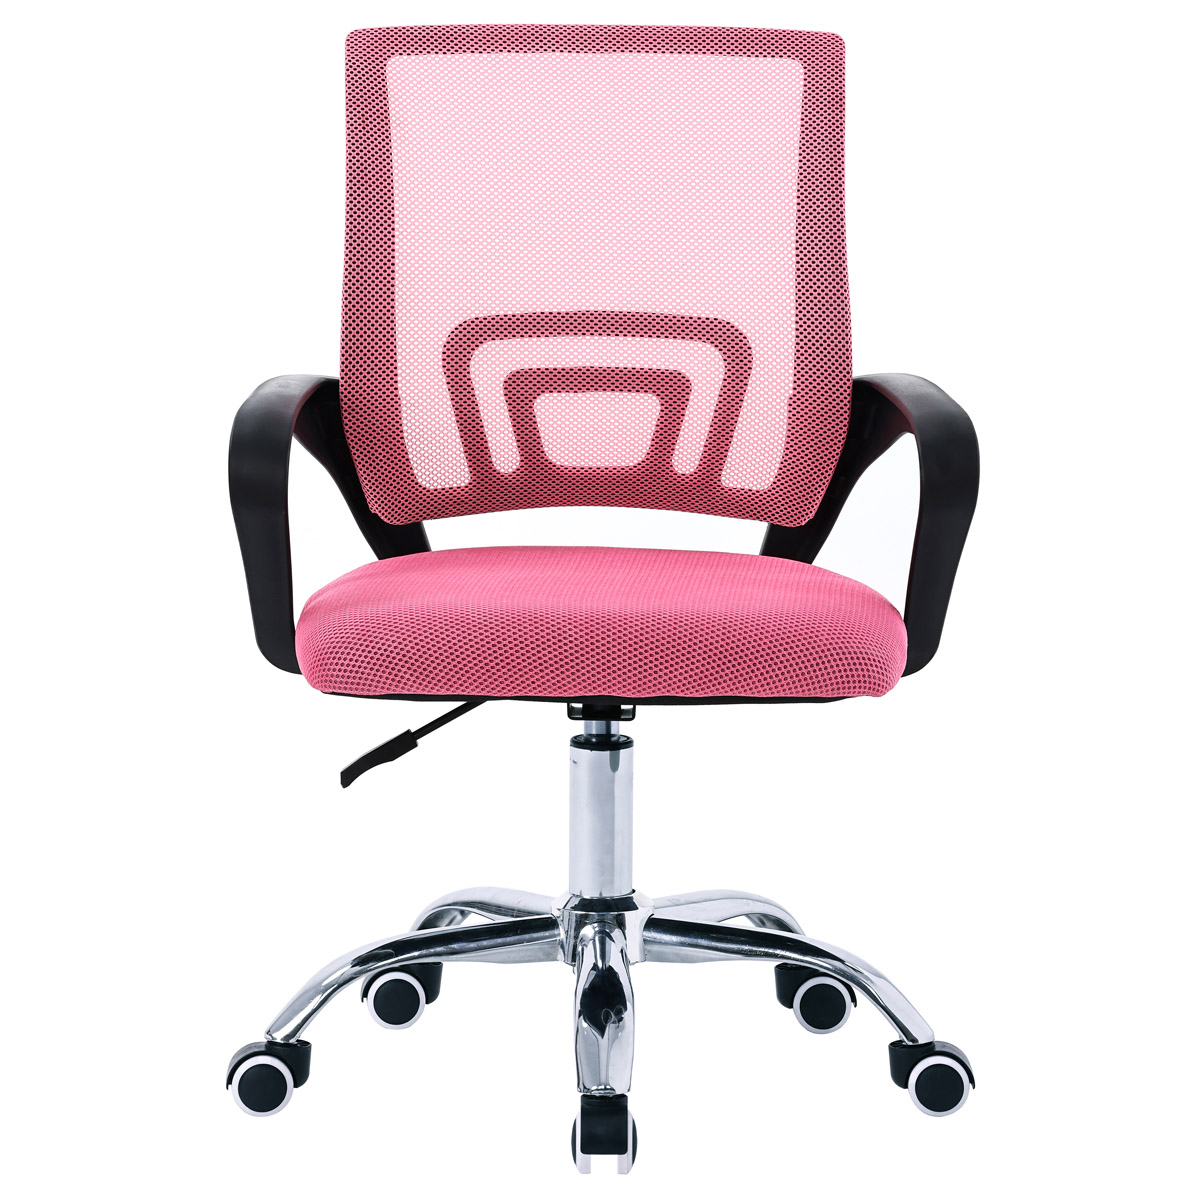 Kancelářská židle, potah růžová látka MESH a síťovina MESH, výškově nastavitelná, kovový chromovaný kříž